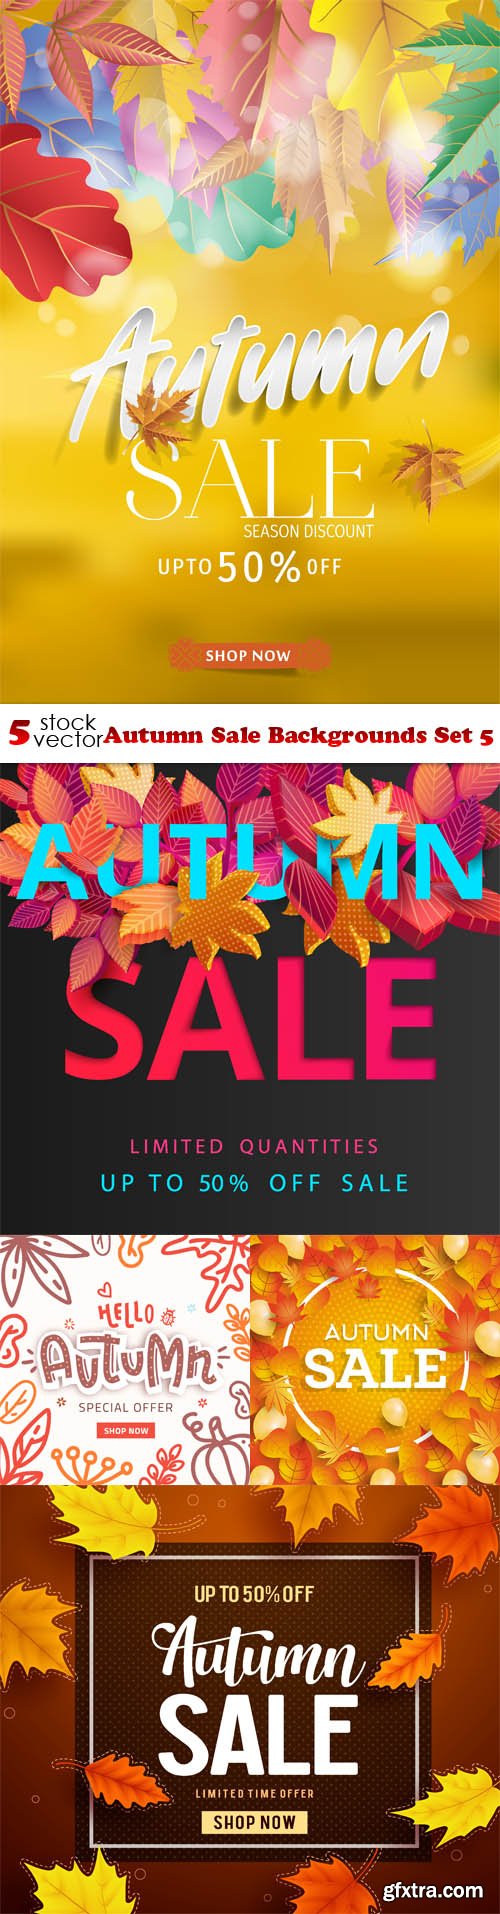 Vectors - Autumn Sale Backgrounds Set 5